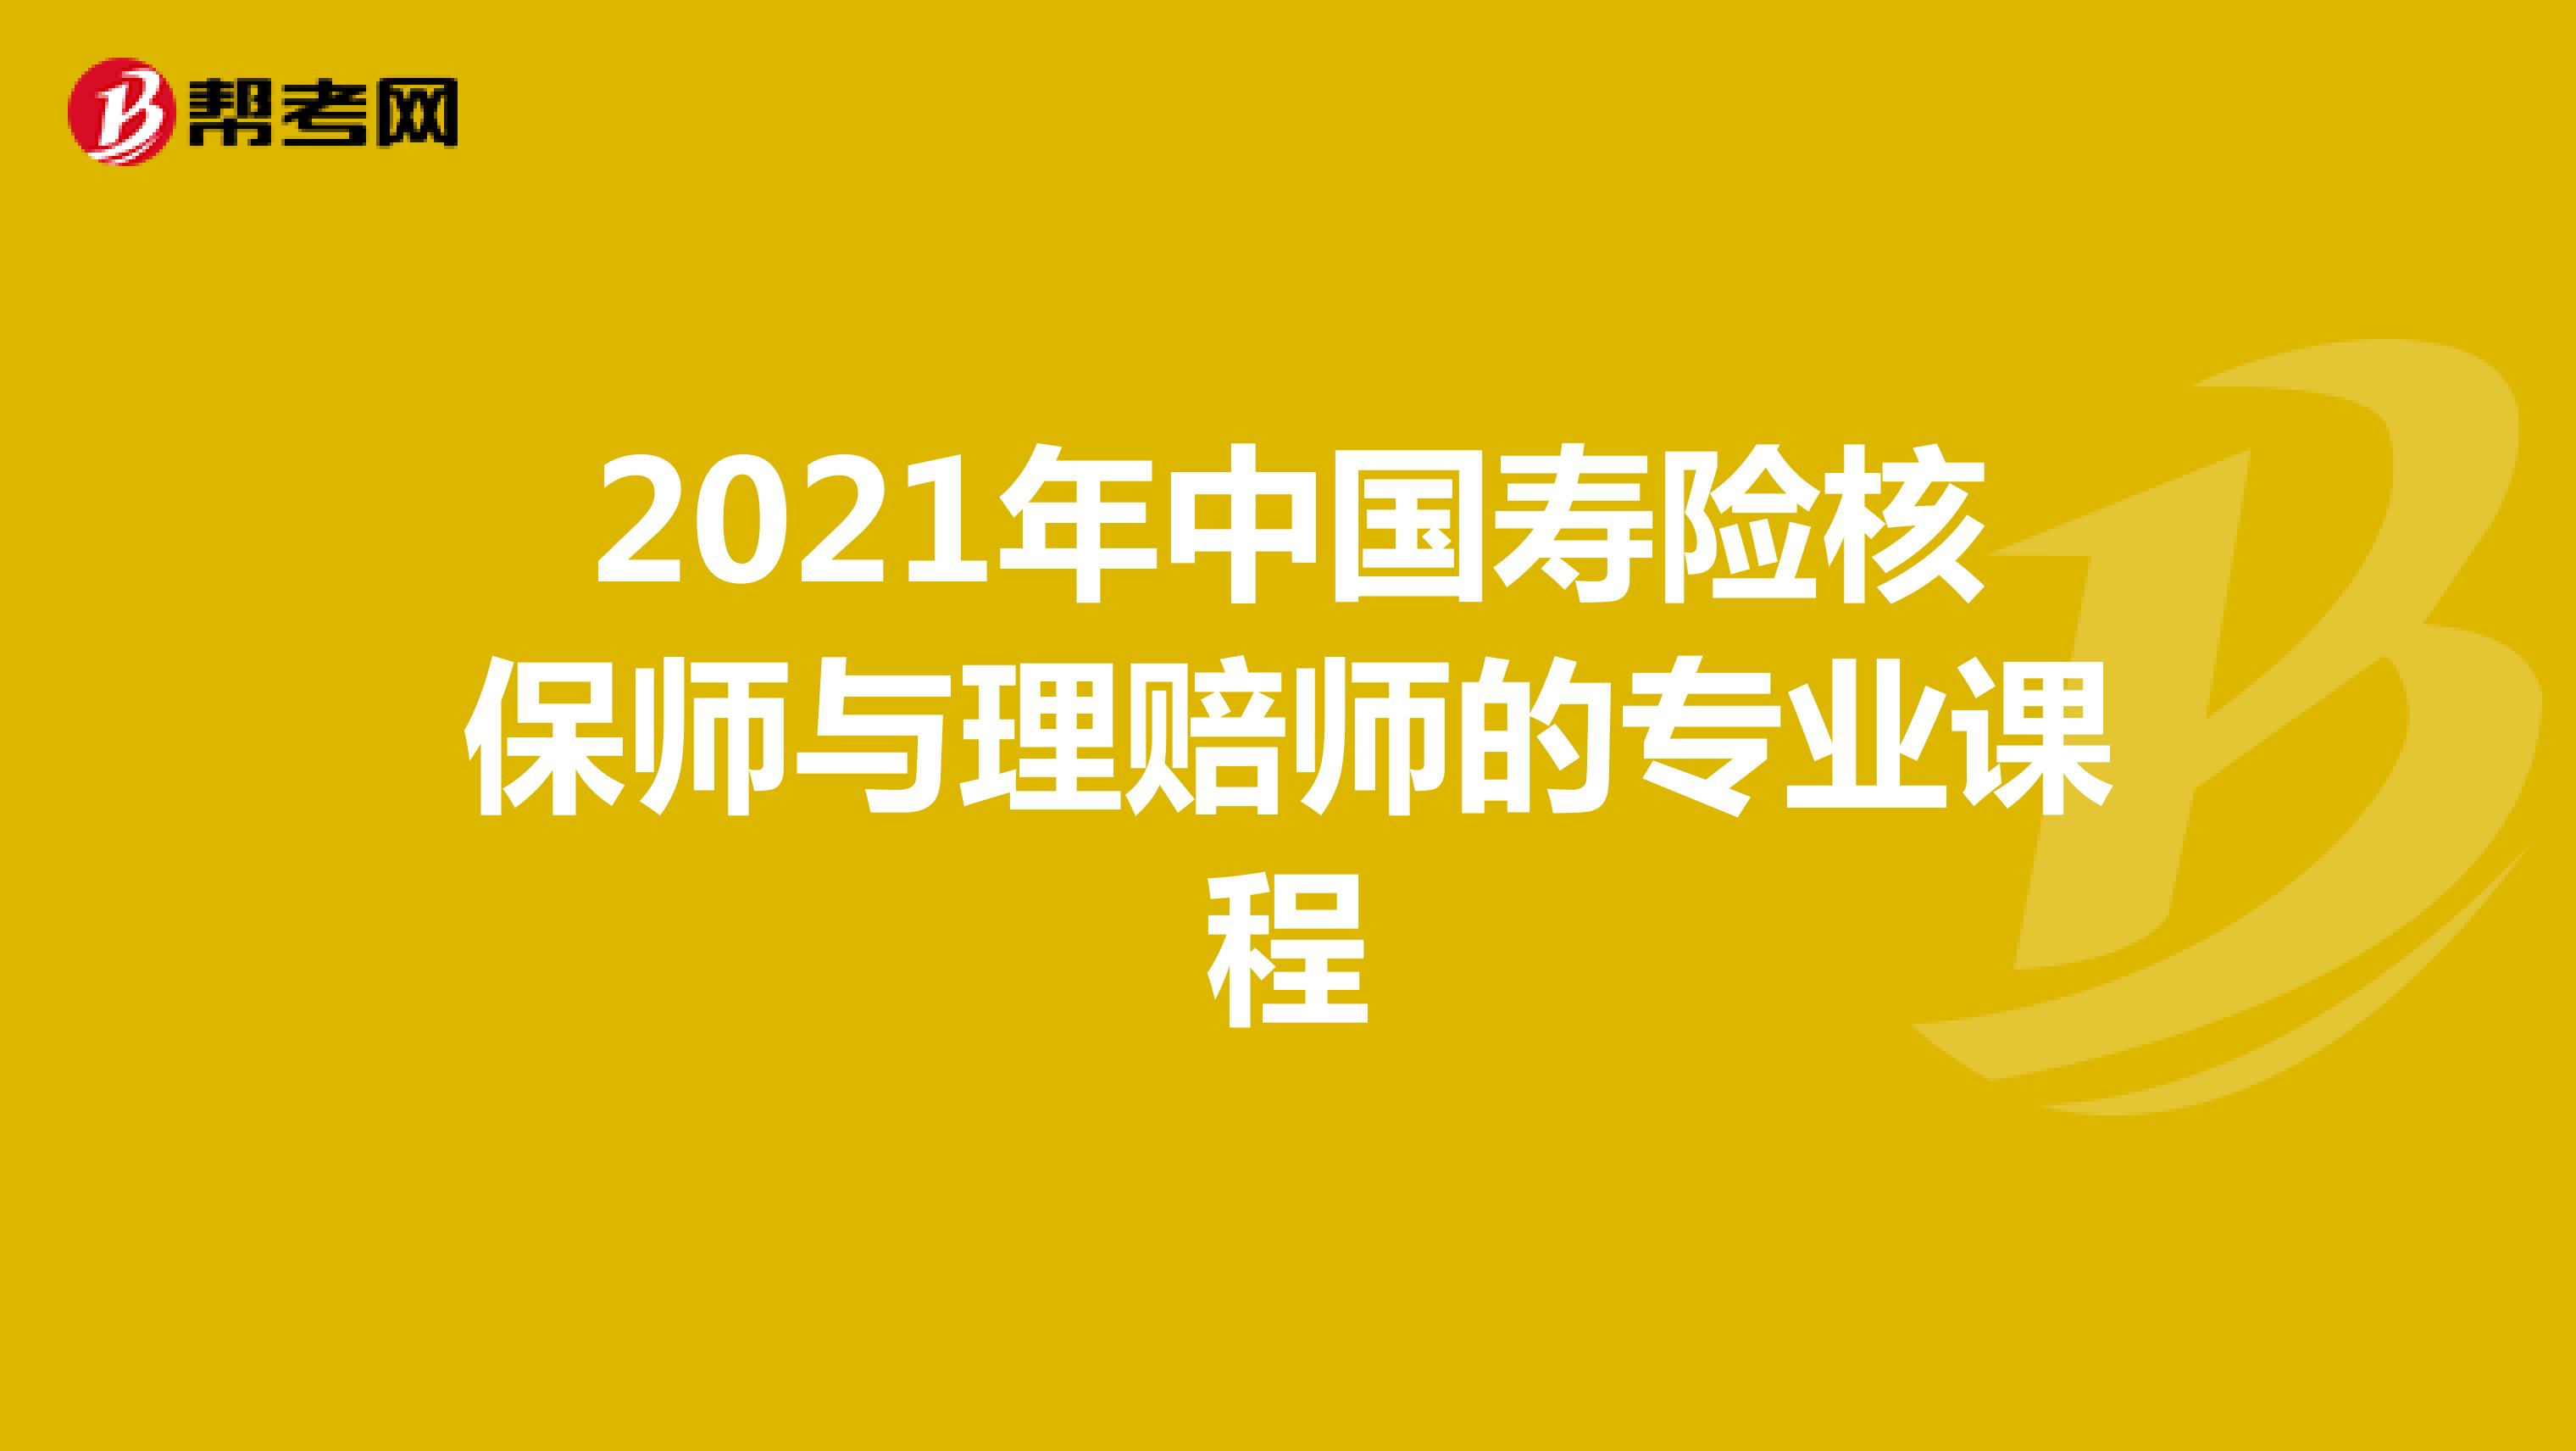 2021年中国寿险核保师与理赔师的专业课程